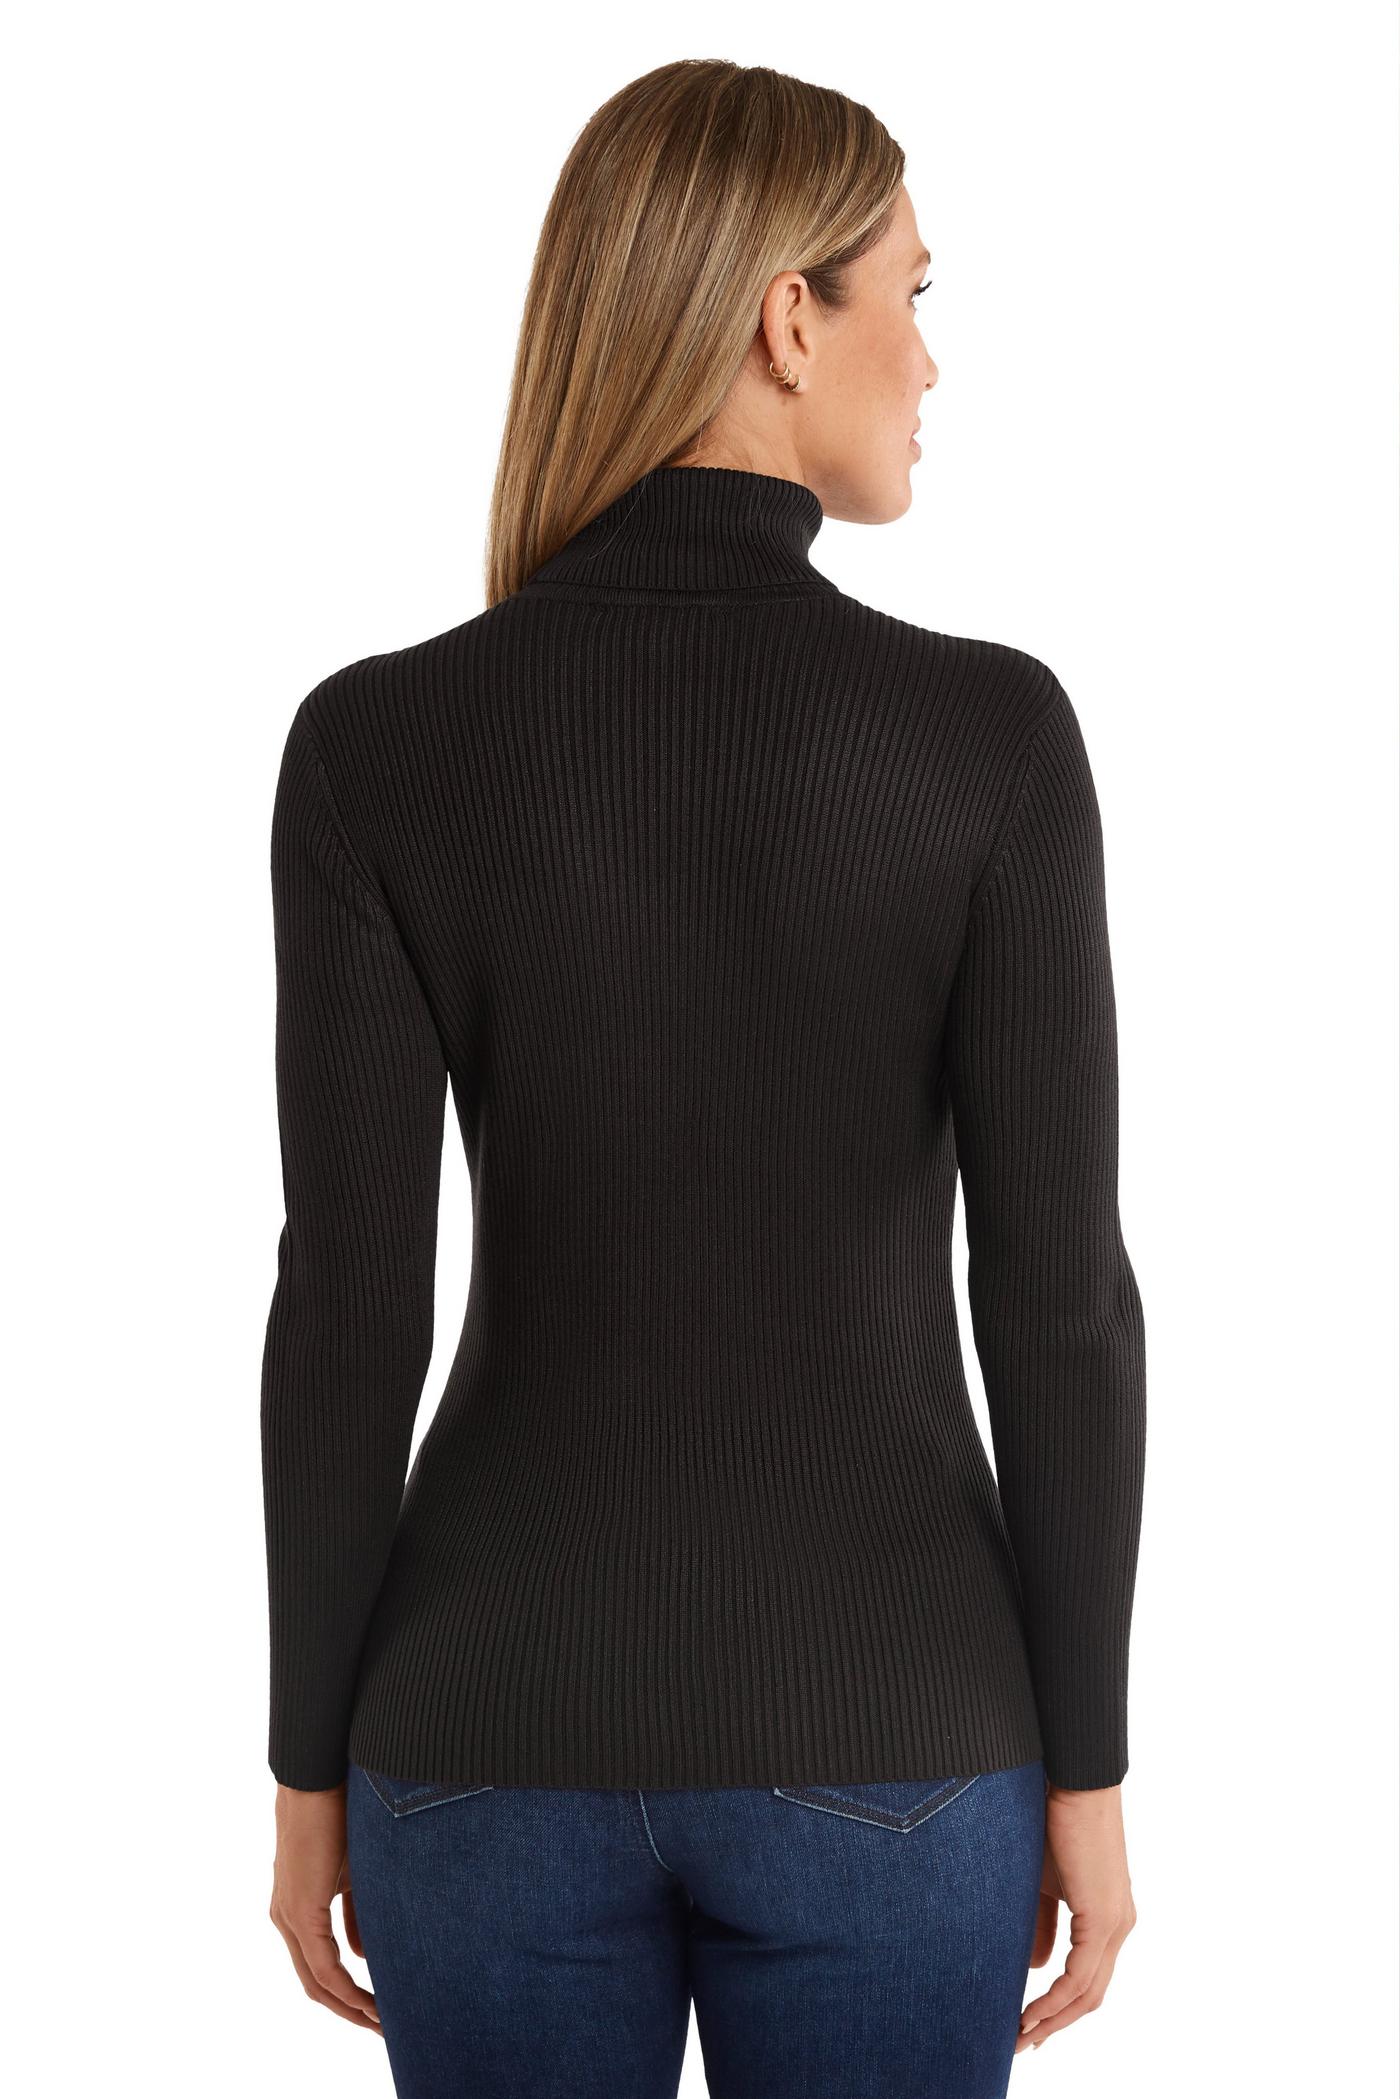 Ribbed Turtleneck Sweater - Proper Black